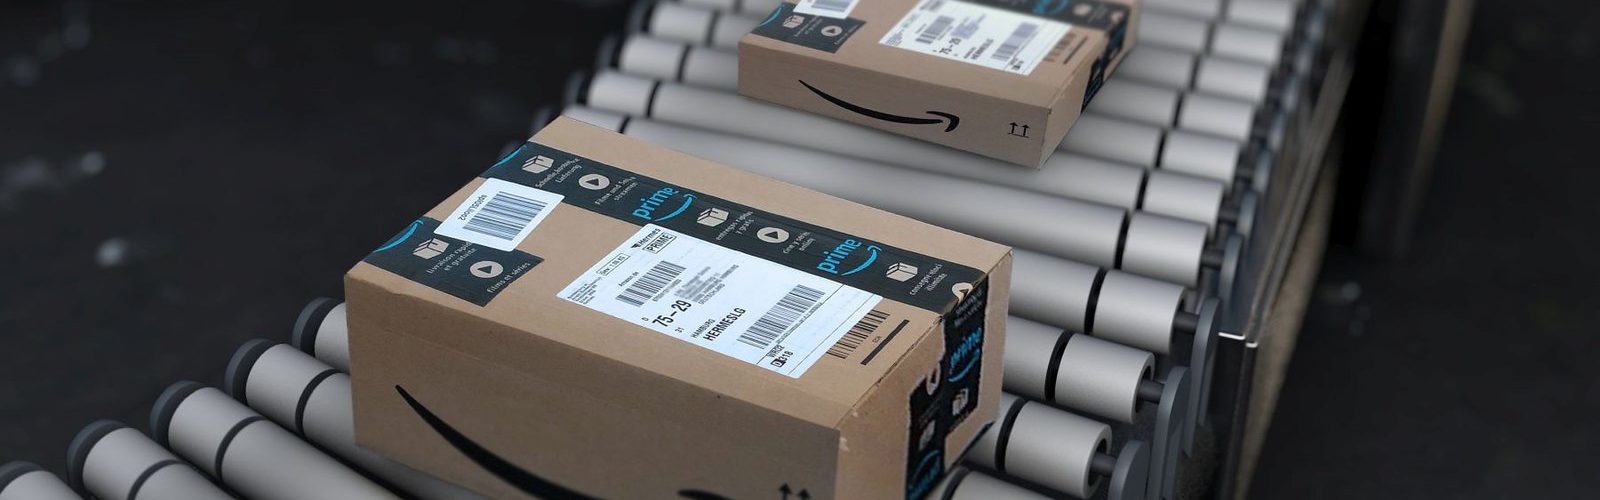 Amazon busca mozos de almacén para enero sin experiencia previa